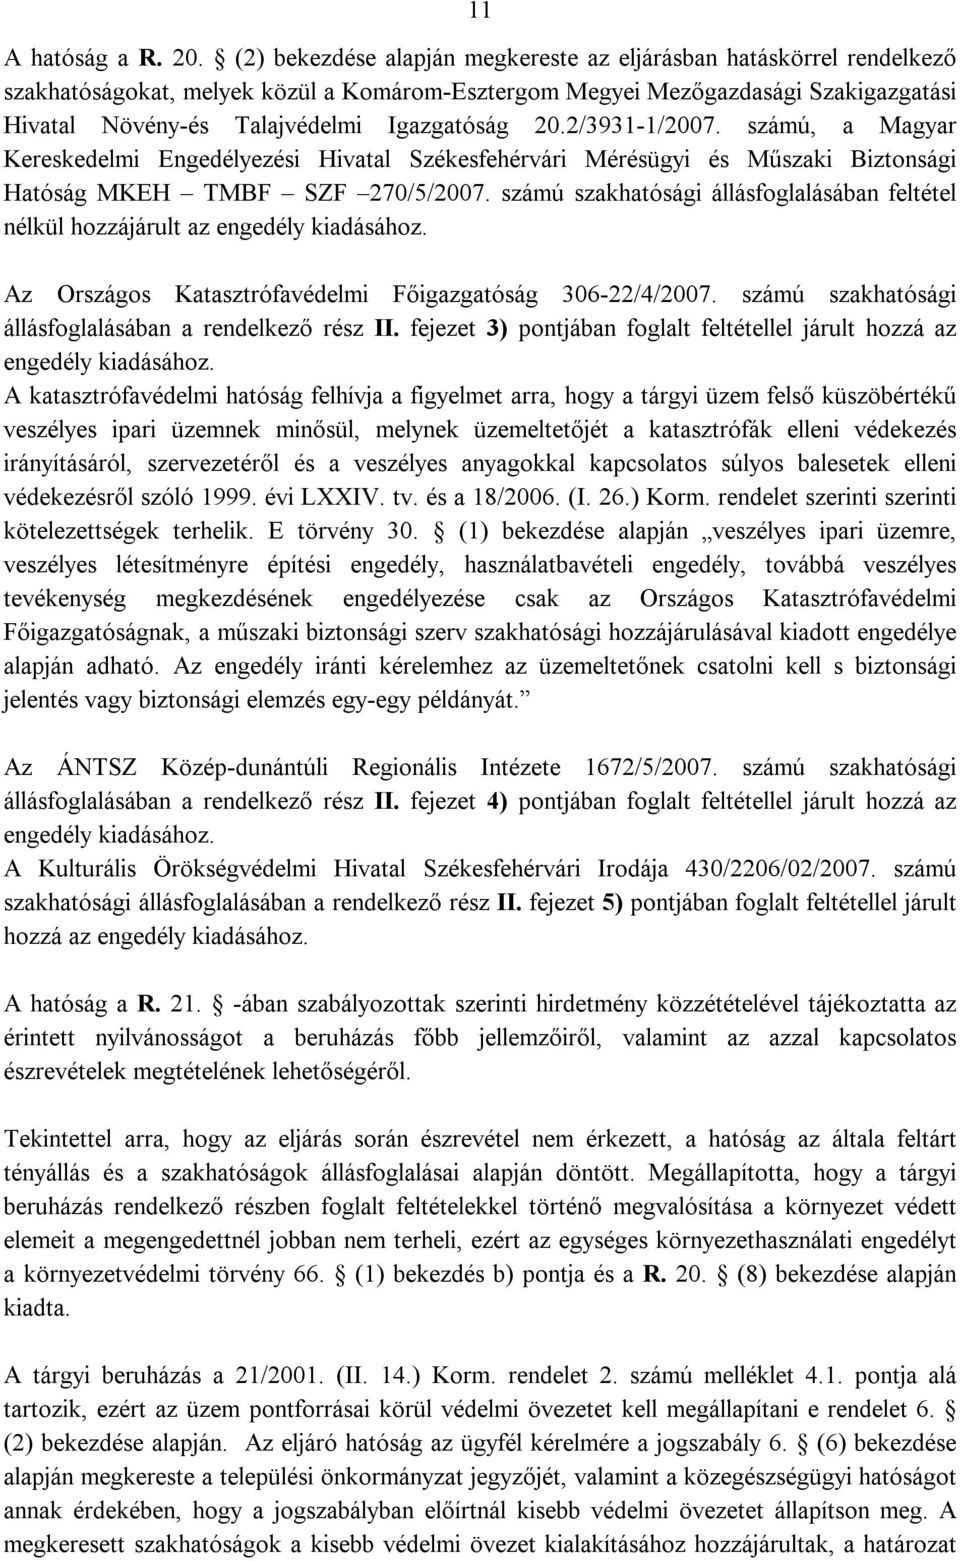 20.2/3931-1/2007. számú, a Magyar Kereskedelmi Engedélyezési Hivatal Székesfehérvári Mérésügyi és Műszaki Biztonsági Hatóság MKEH TMBF SZF 270/5/2007.